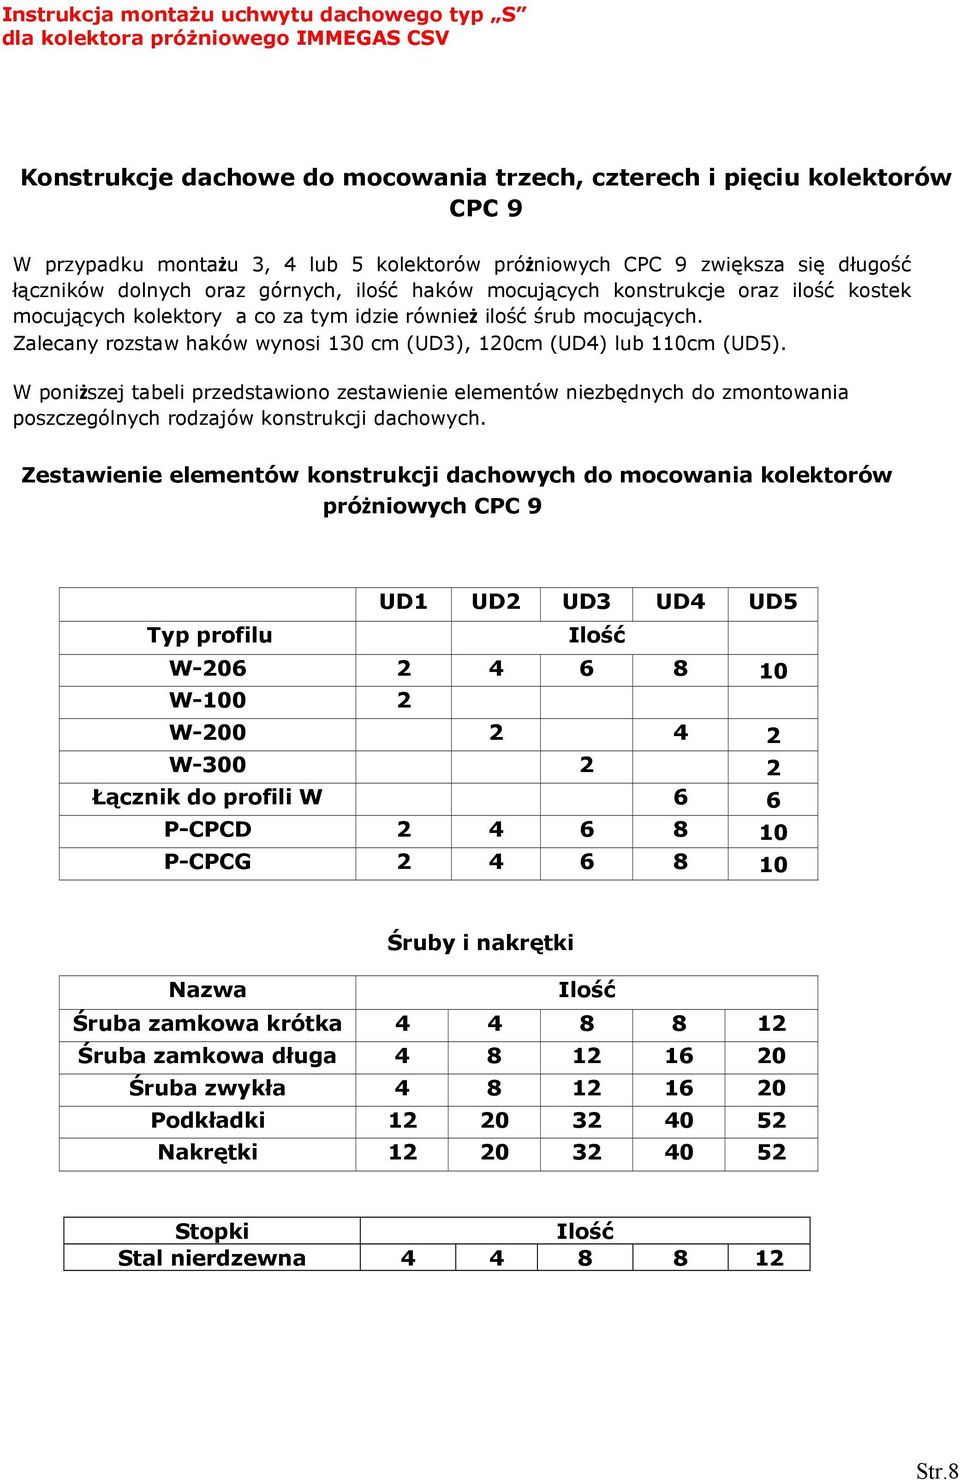 Zalecany rozstaw haków wynosi 130 cm (UD3), 120cm (UD4) lub 110cm (UD5).